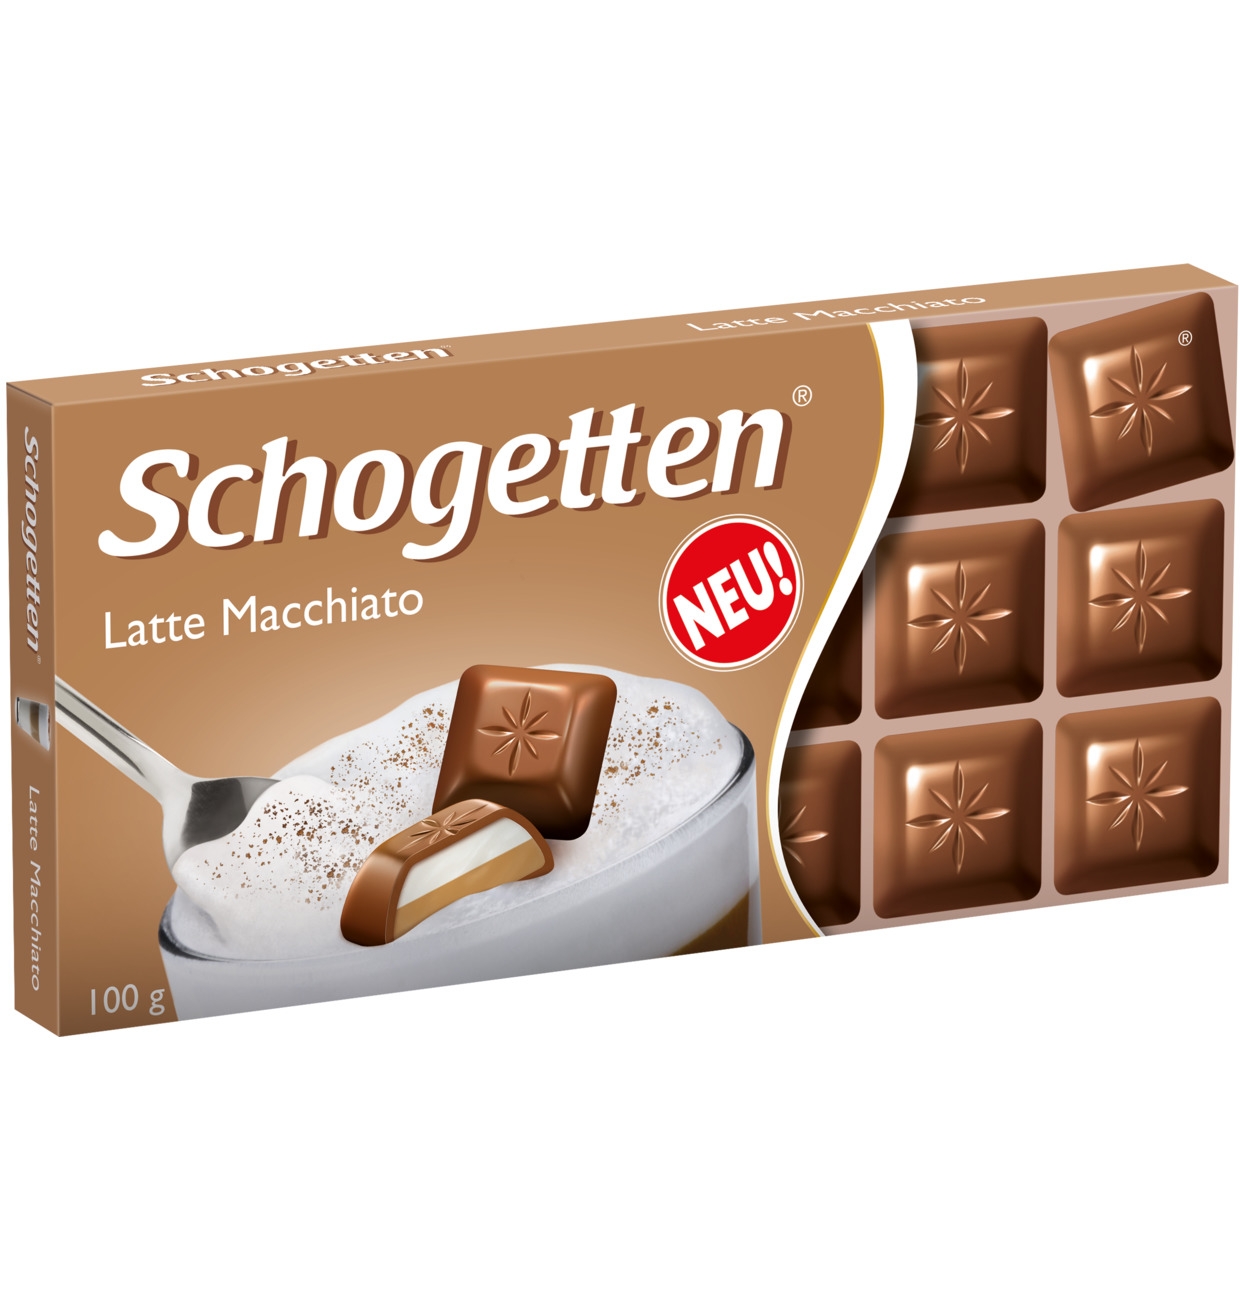 Schogetten Ciocolata latte macchiato, 100g